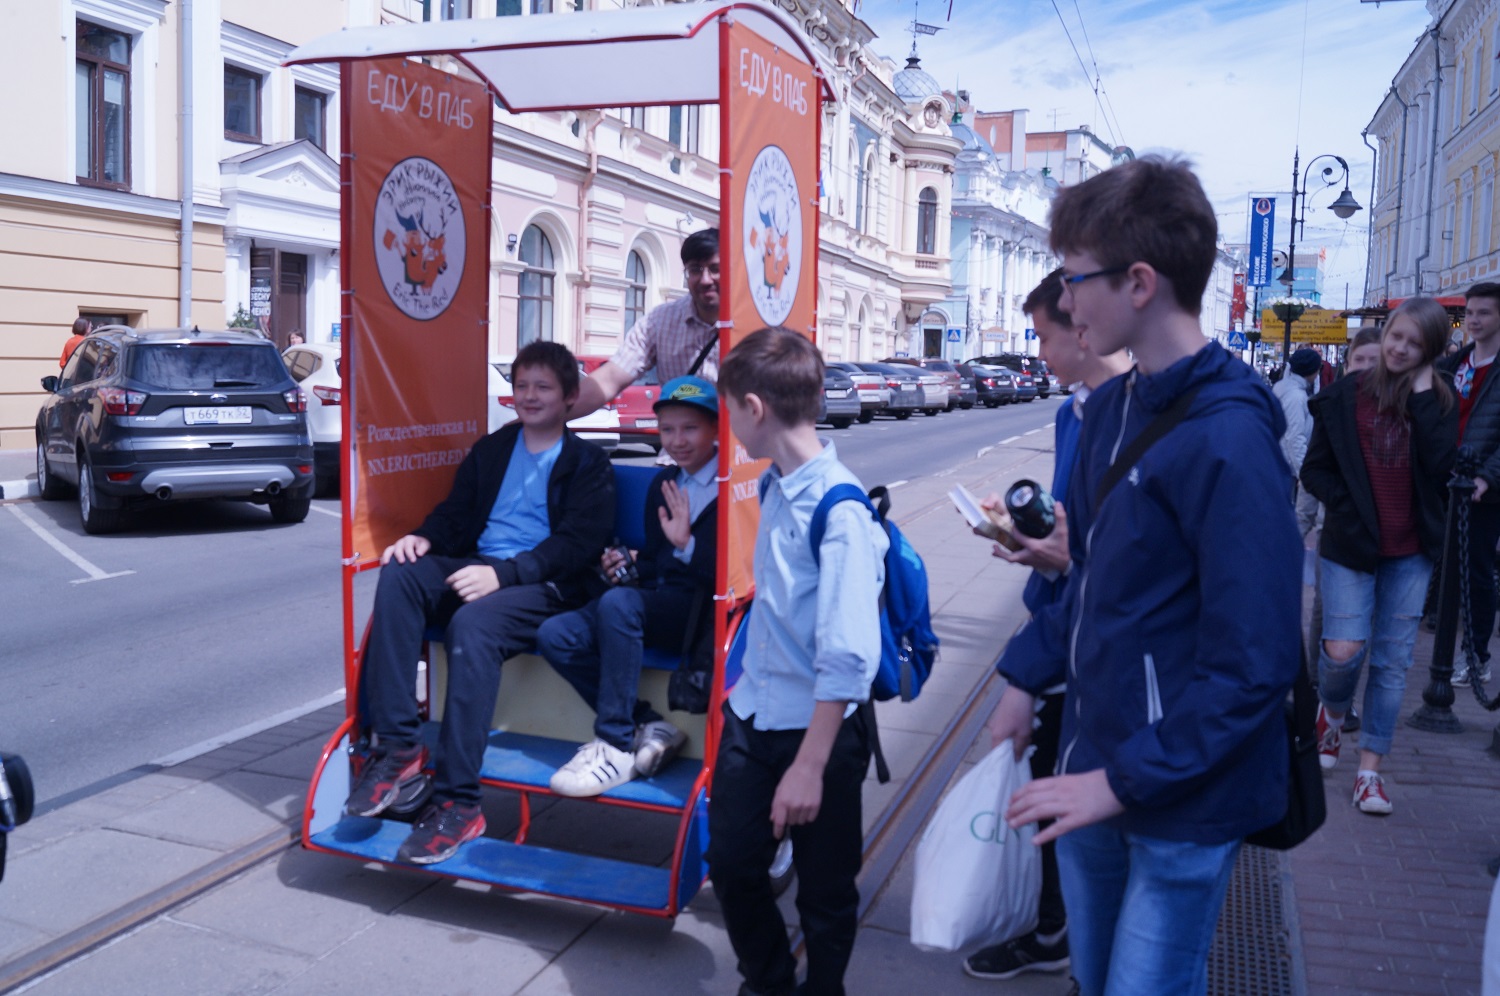 Велорикши и сухой борщ: новые развлечения в Нижнем Новгороде - фото 1